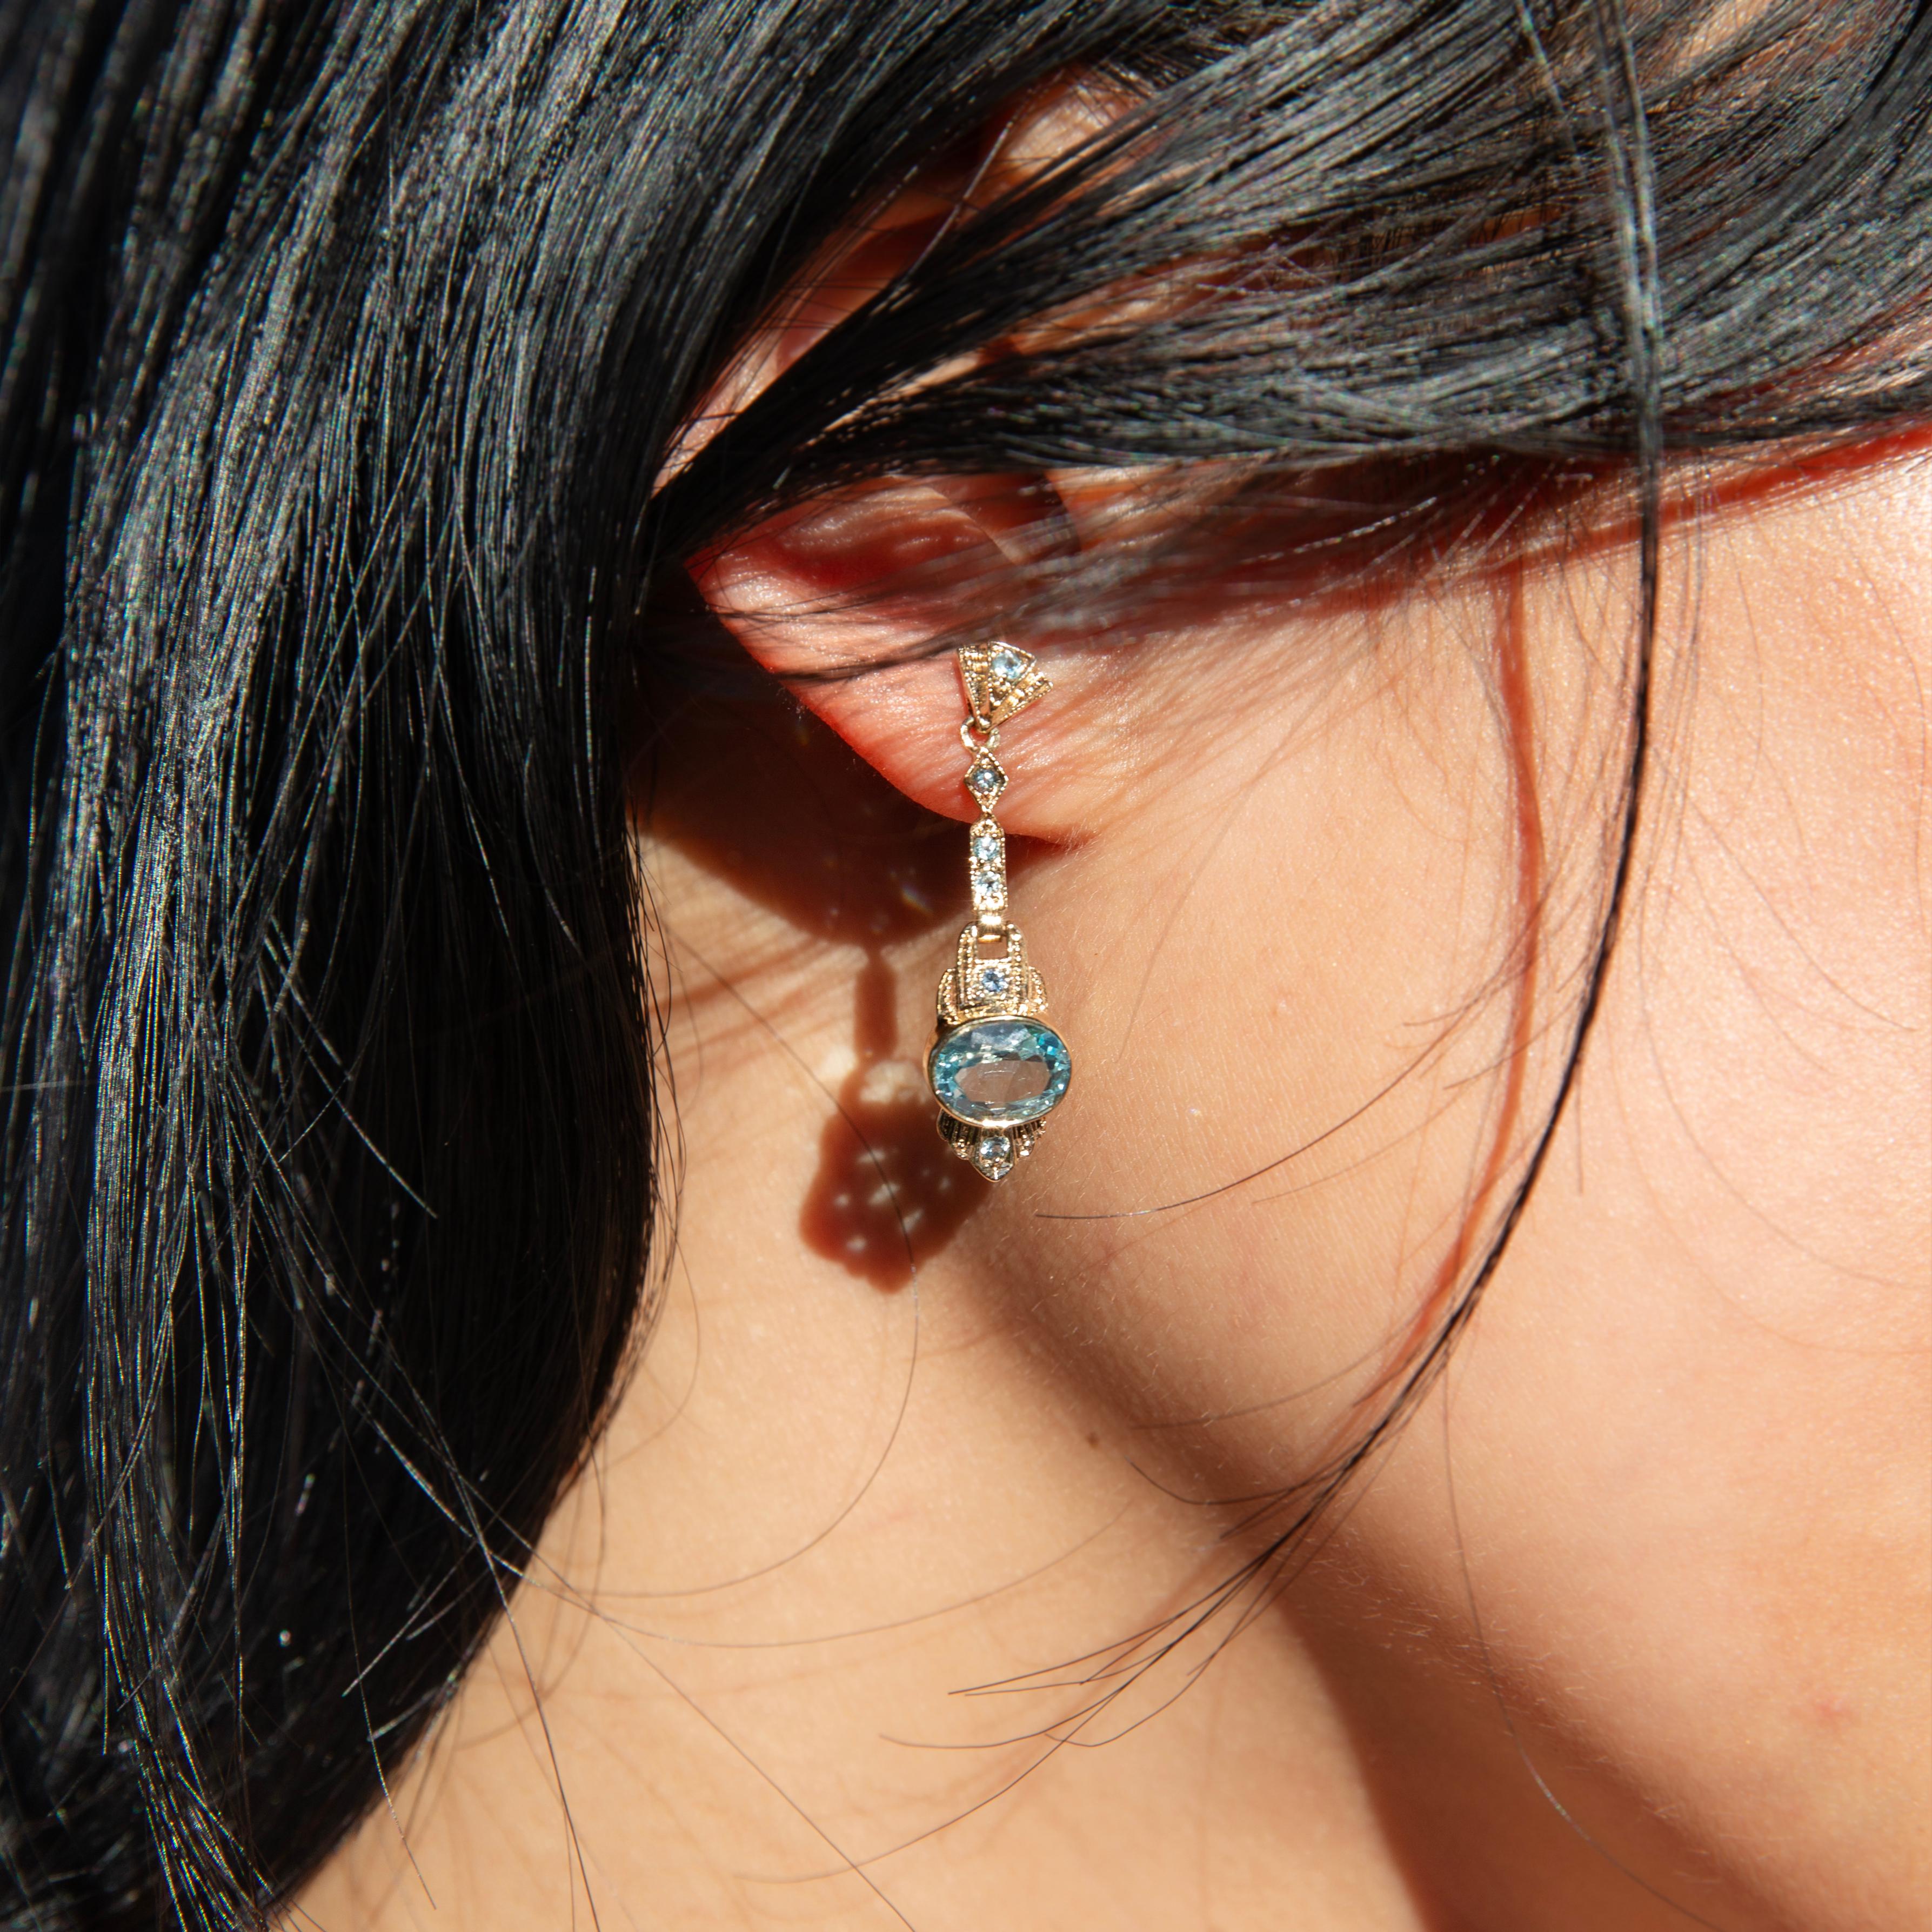 Die vom Goldenen Zeitalter Hollywoods inspirierten Cecelia-Ohrringe sind ein glamouröses Schmuckstück. Das geprägte Gold und die Symmetrie des Designs sind mit dem hellsten himmelblauen Topas besetzt. Sie spielt die Hauptrolle in diesem filmischen